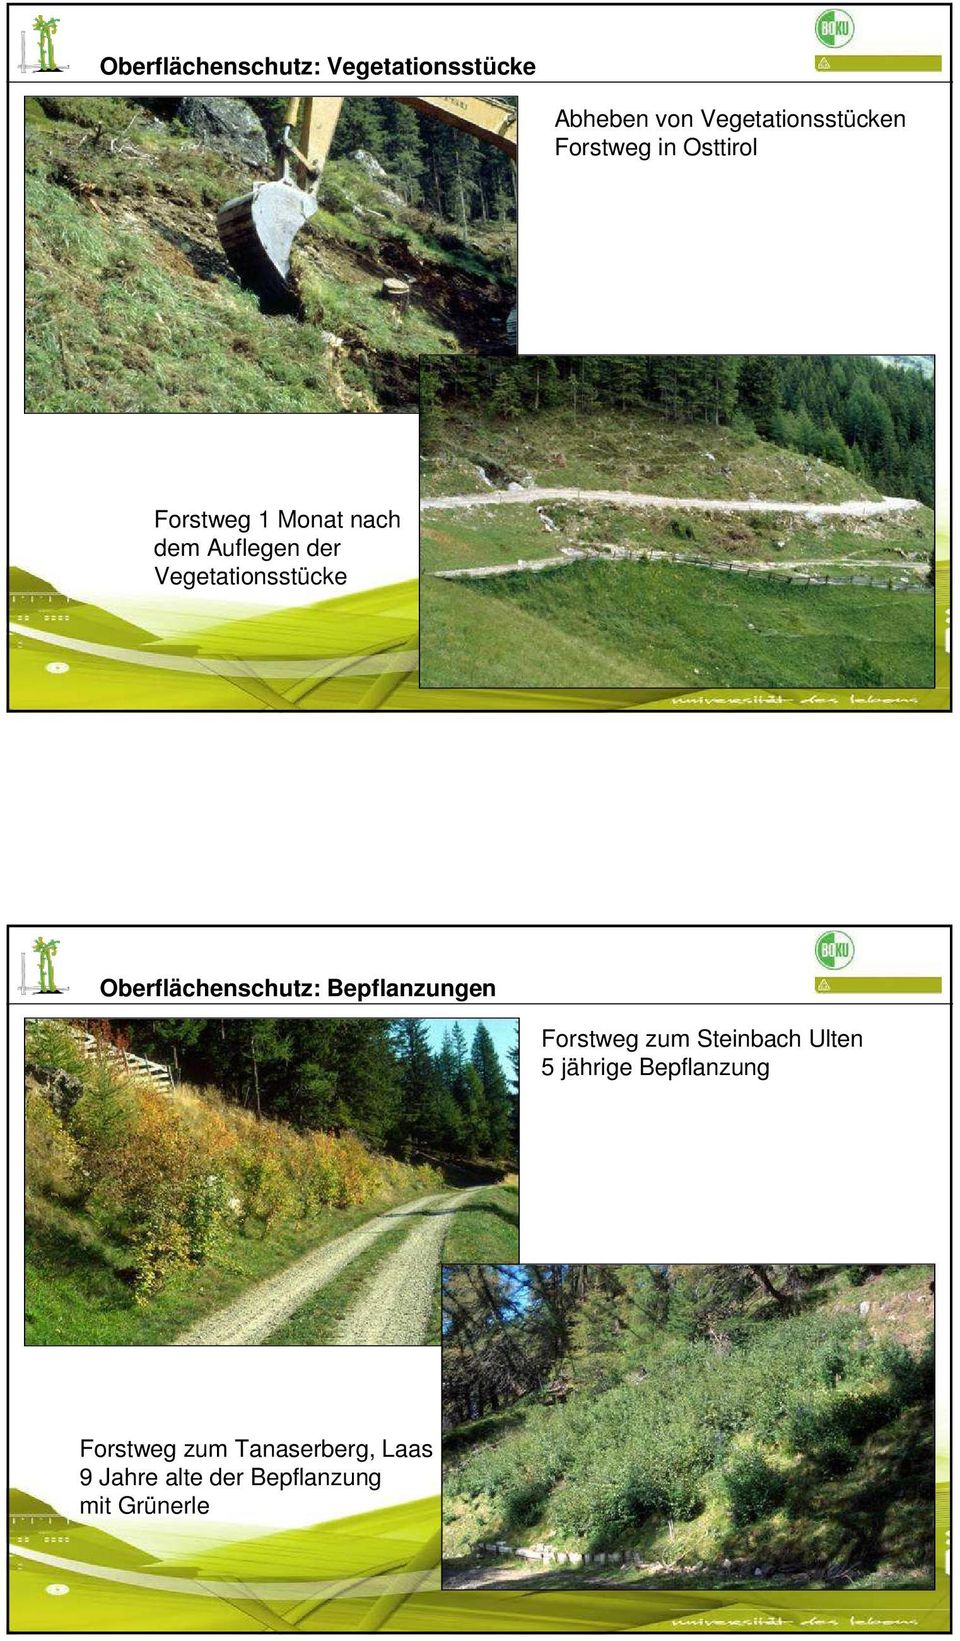 Vegetationsstücke Oberflächenschutz: Bepflanzungen Forstweg zum Steinbach